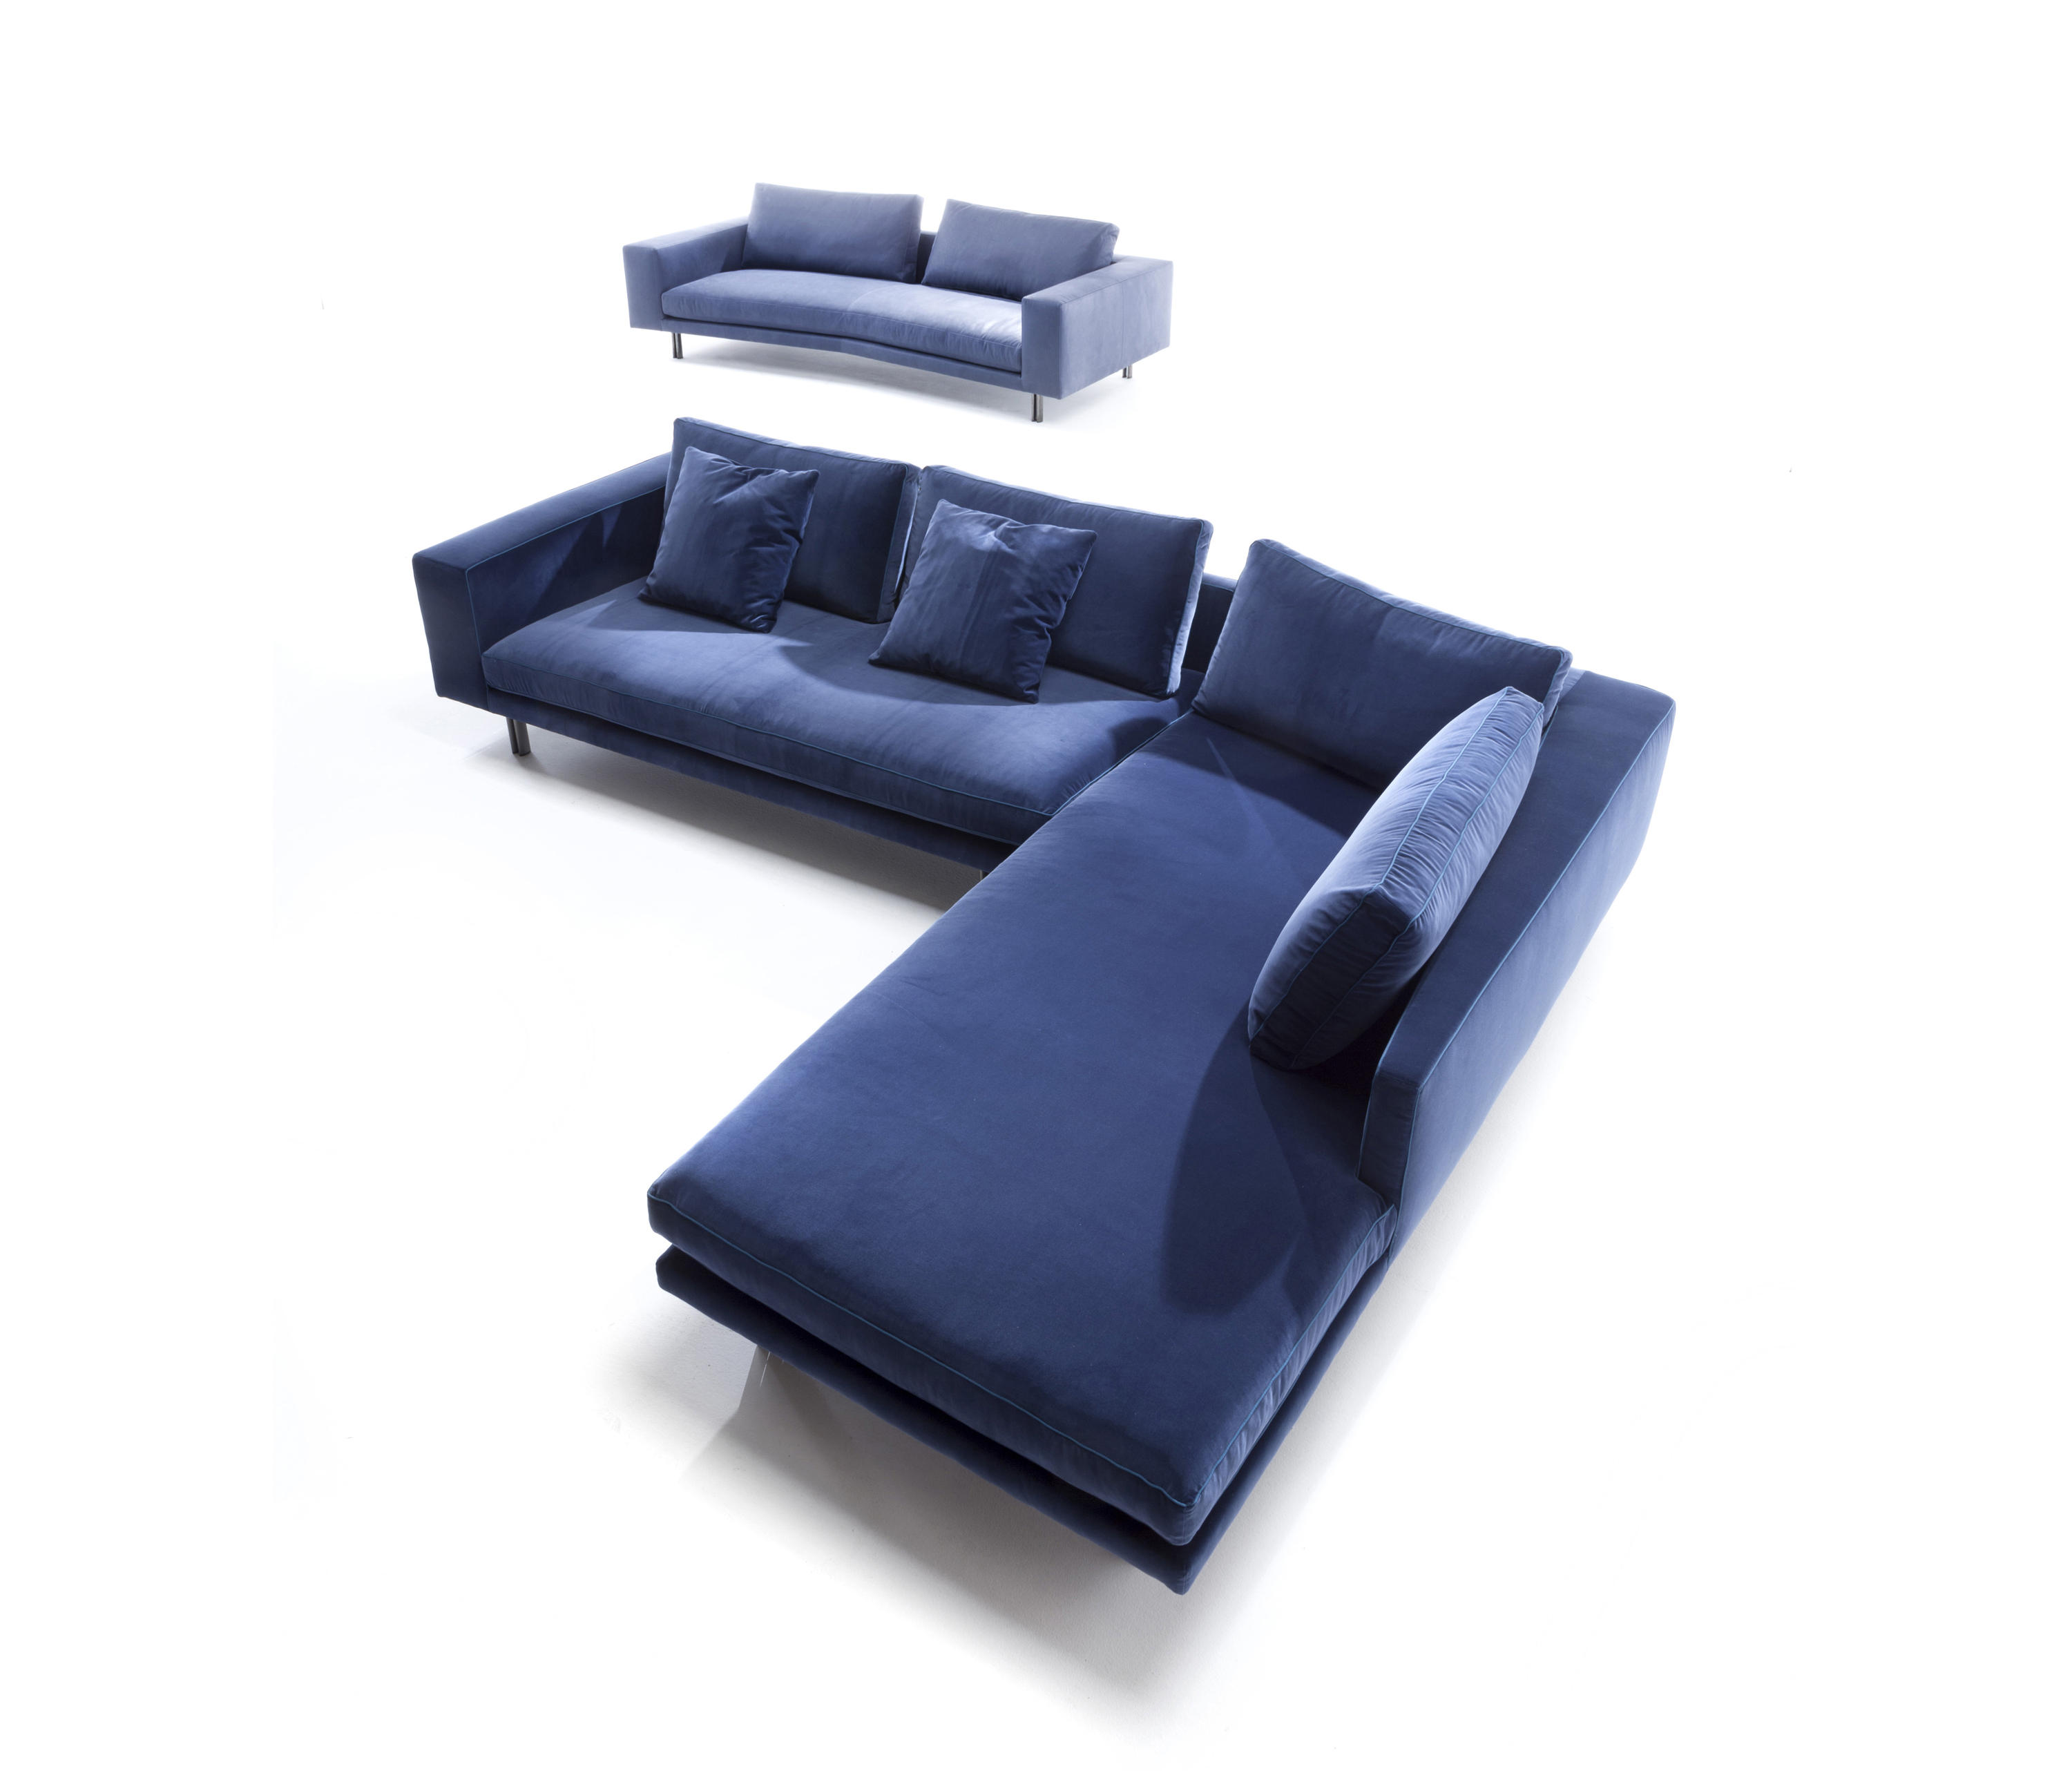 Inno Sofa Collection by Erba Italia